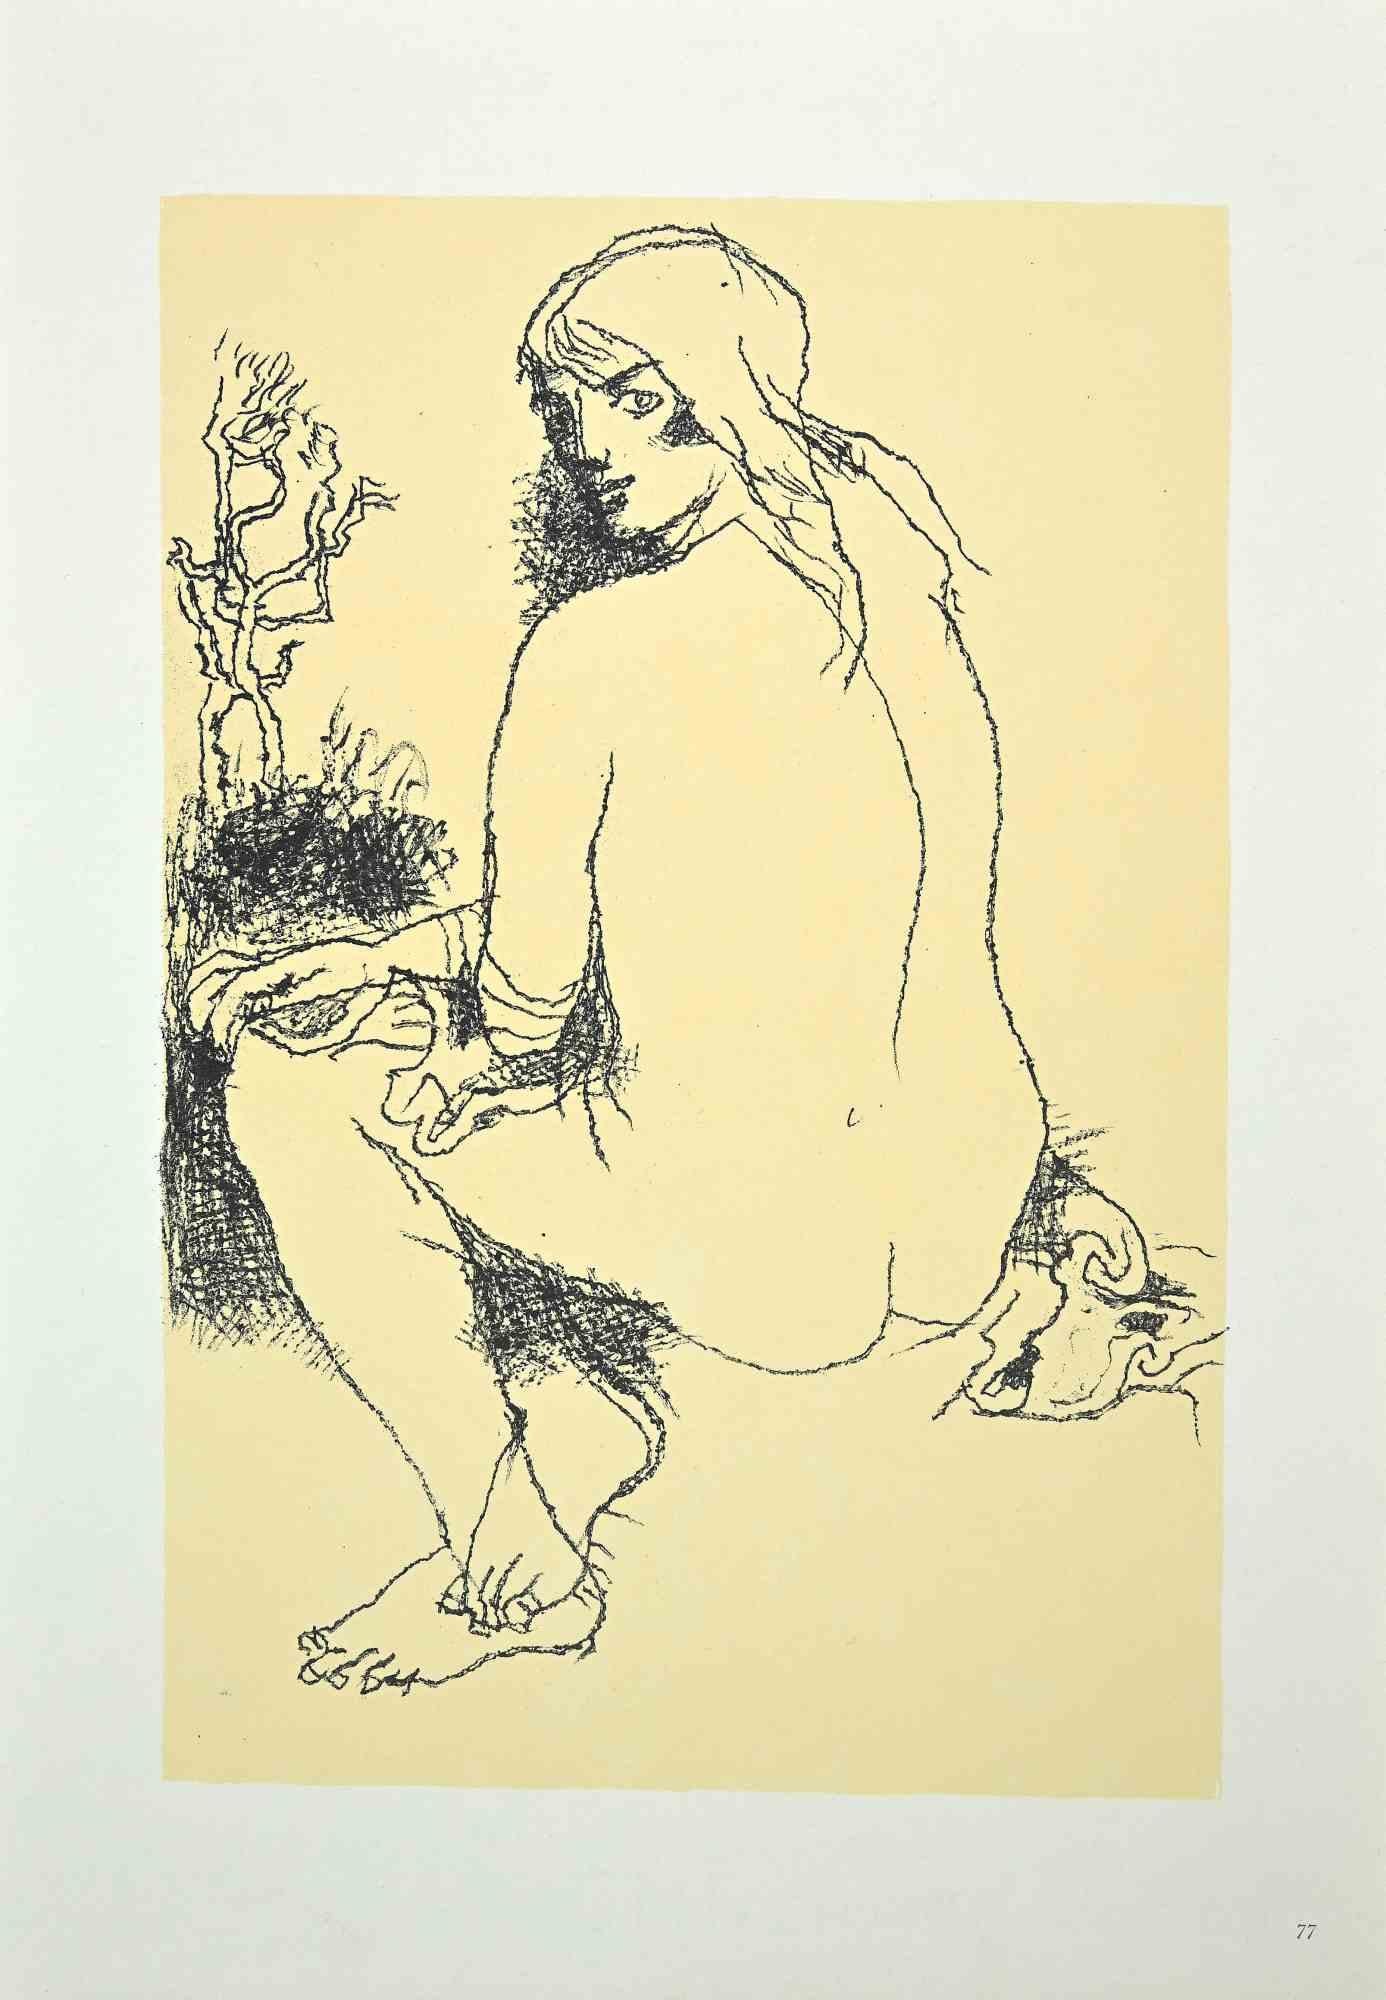 Femme nue est une impression offset vintage originale sur papier couleur ivoire, réalisée par Franco Gentilini (peintre italien, 1909-1981) dans les années 1970.

L'état de conservation des œuvres d'art est excellent.

Franco Gentilini ( Peintre